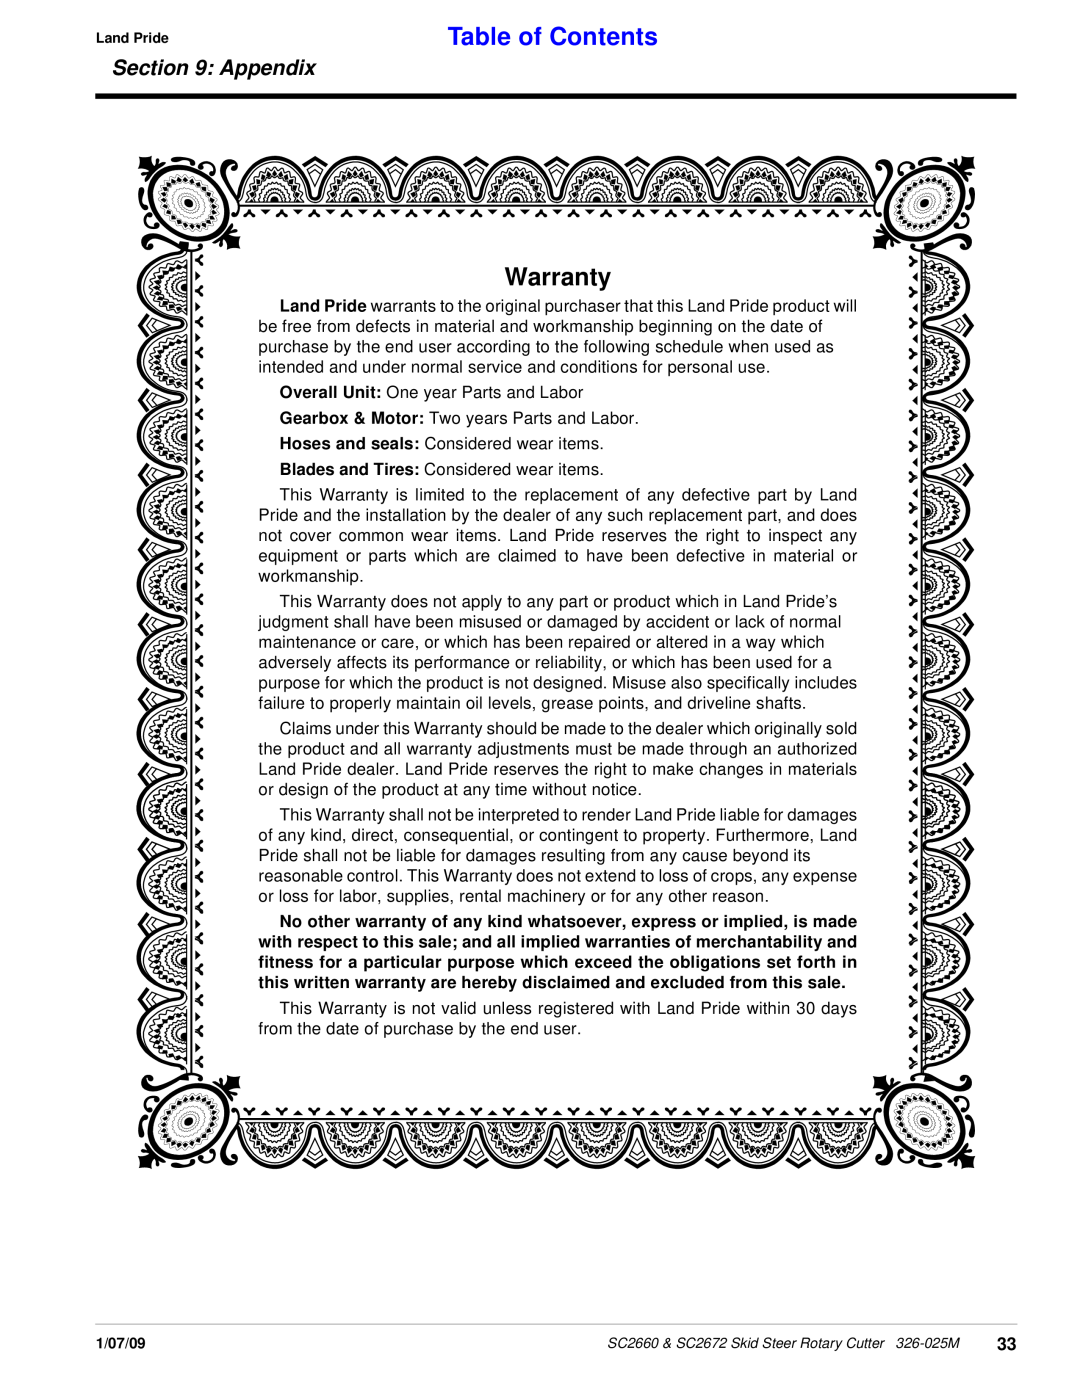 Land Pride SC2672, SC2660 manual Warranty, Table of Contents, Appendix 